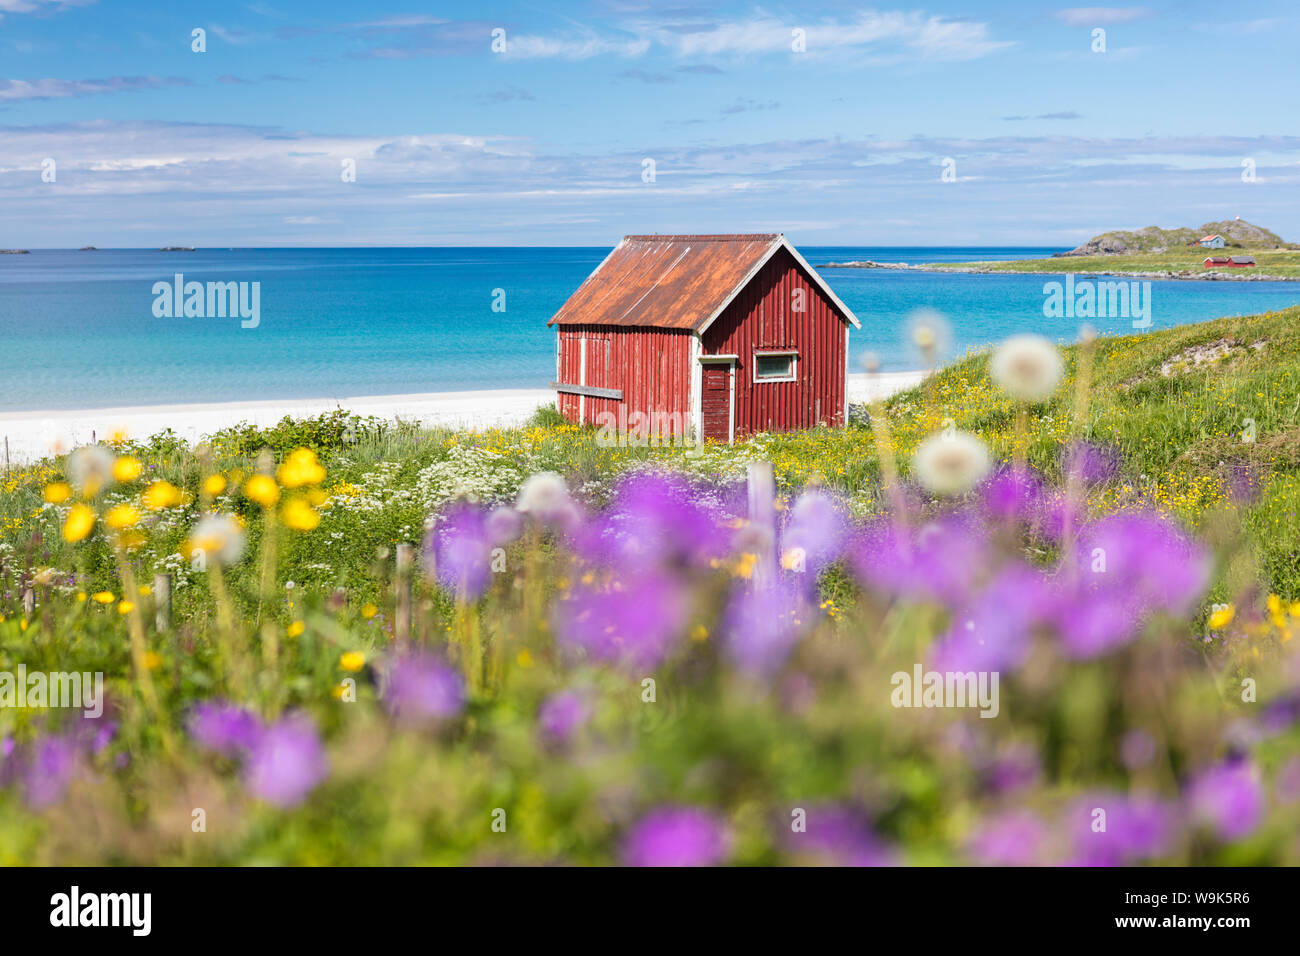 Fleurs colorées sur le châssis de vertes prairies rorbu typique entourée par une mer turquoise, Ramberg, îles Lofoten, Norvège, Scandinavie, Europe Banque D'Images